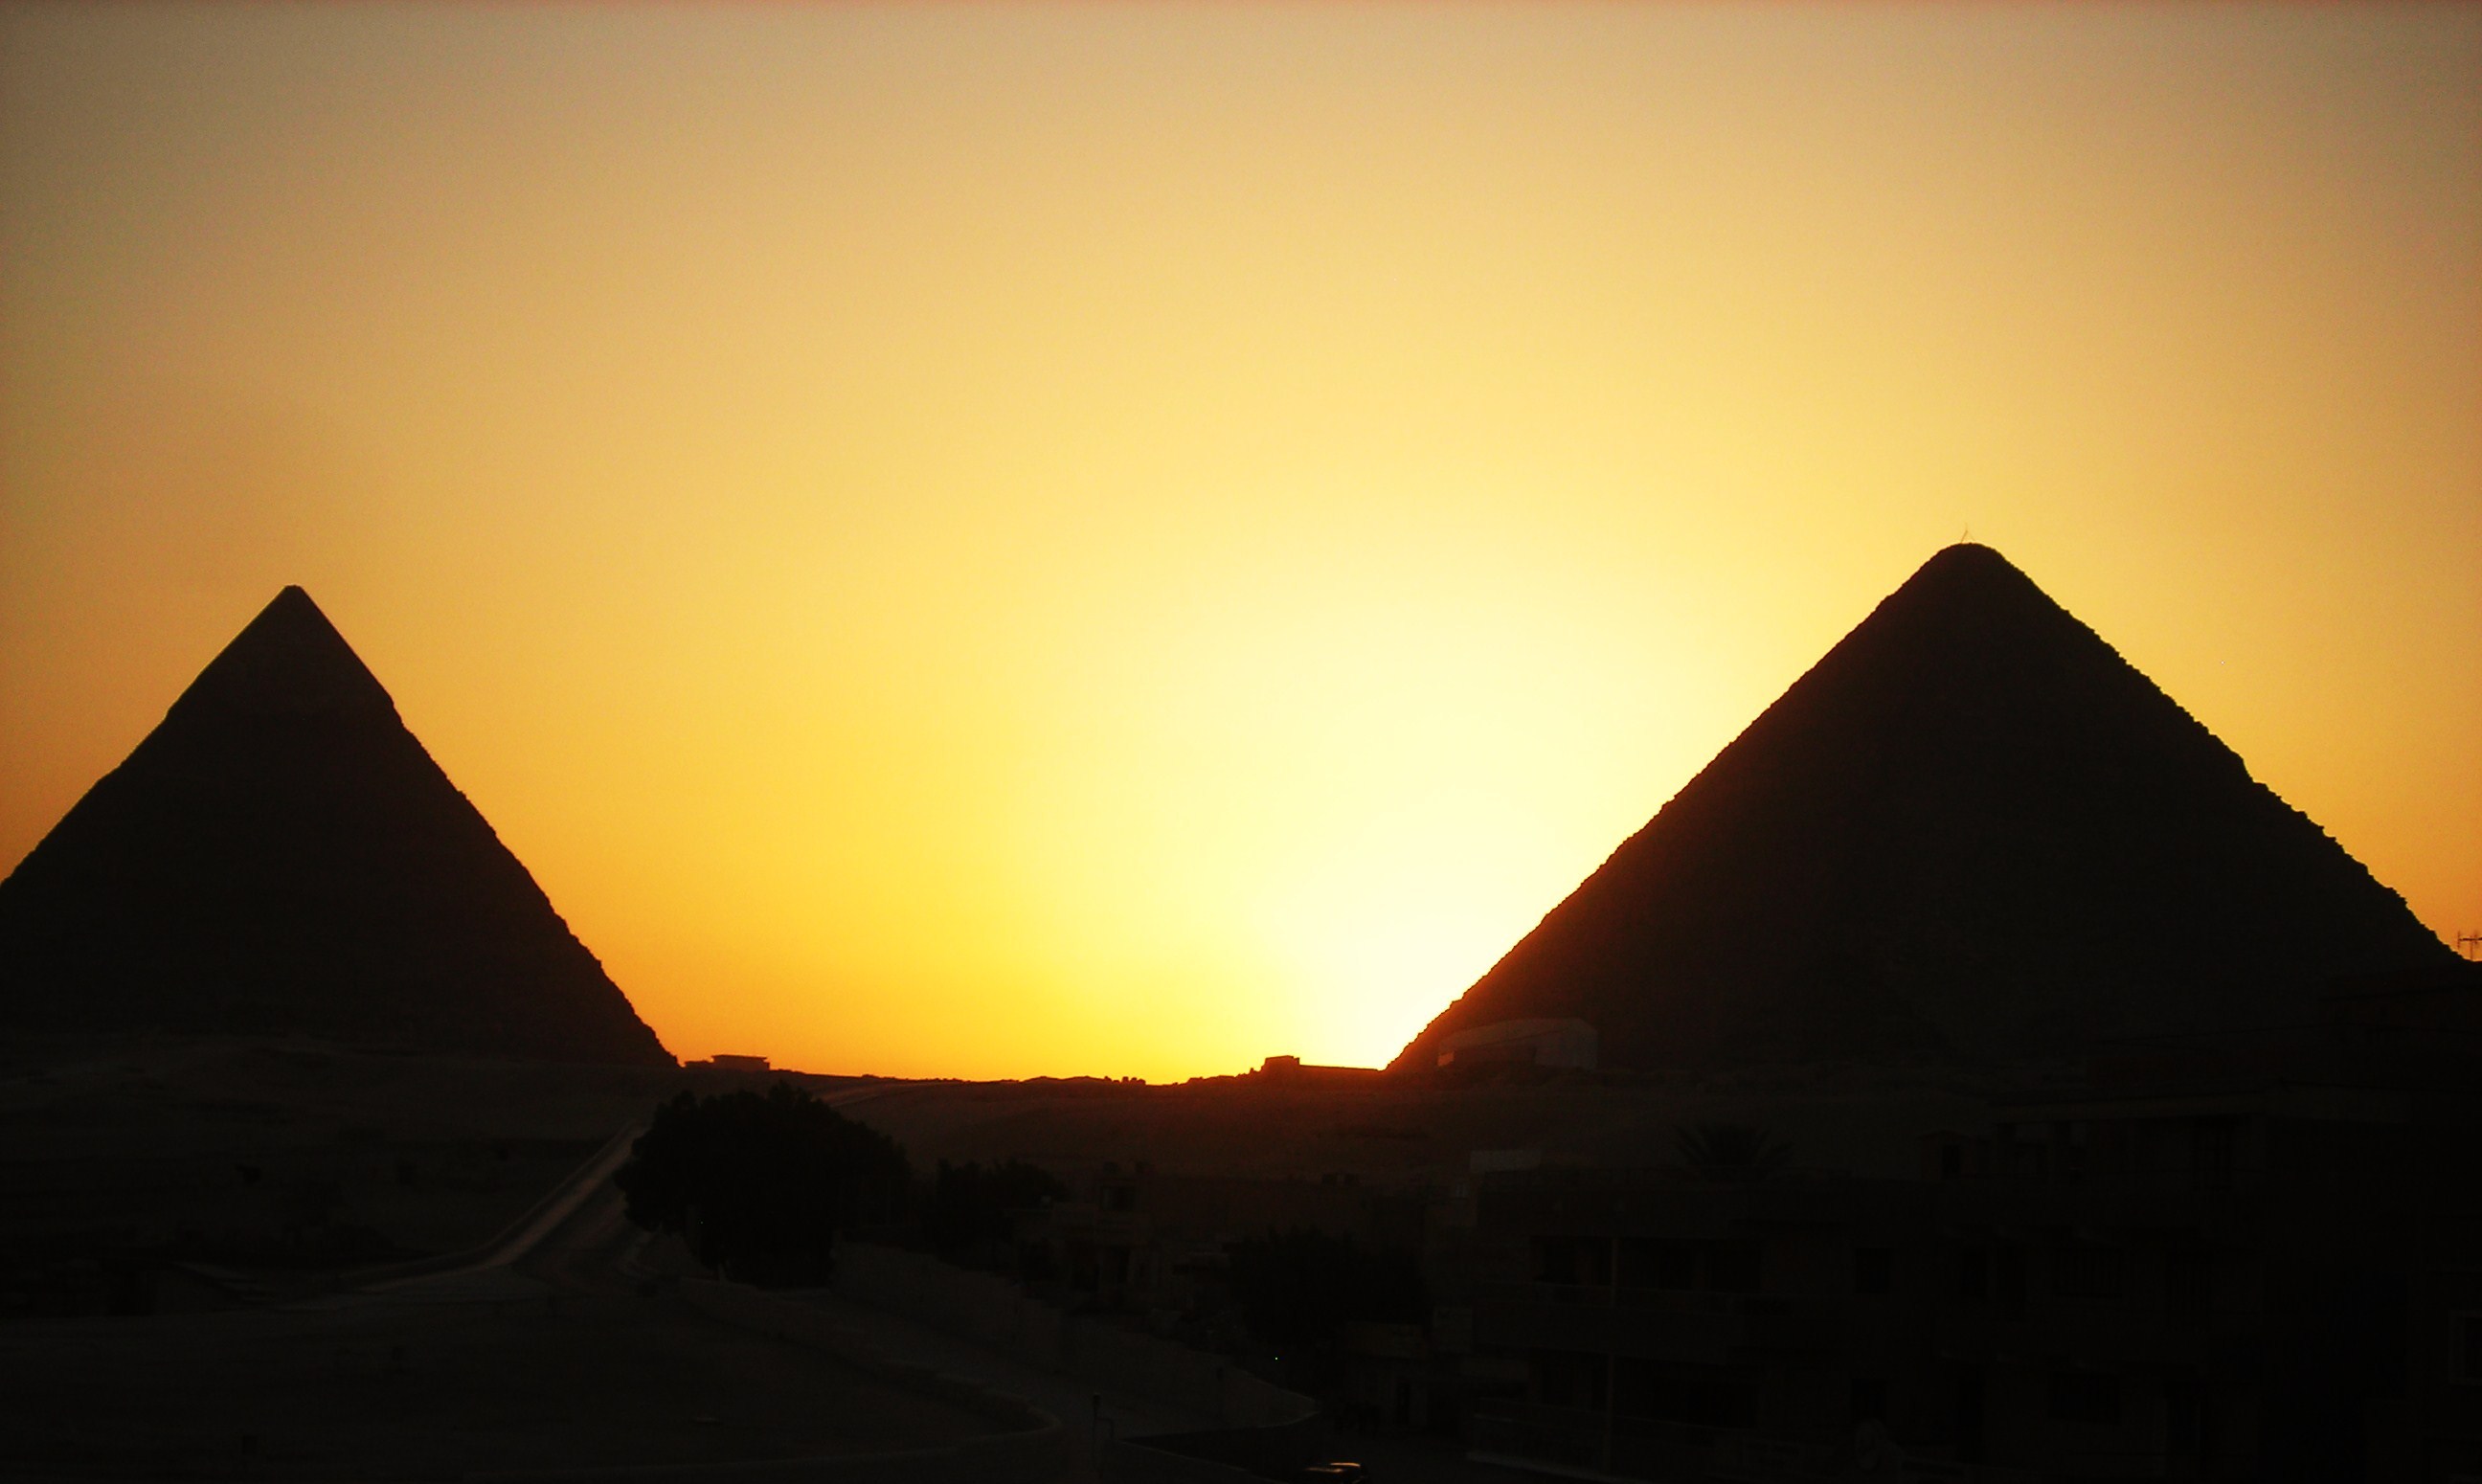 fondos de pantalla fotos hd,pirámide,cielo,monumento,puesta de sol,paisaje